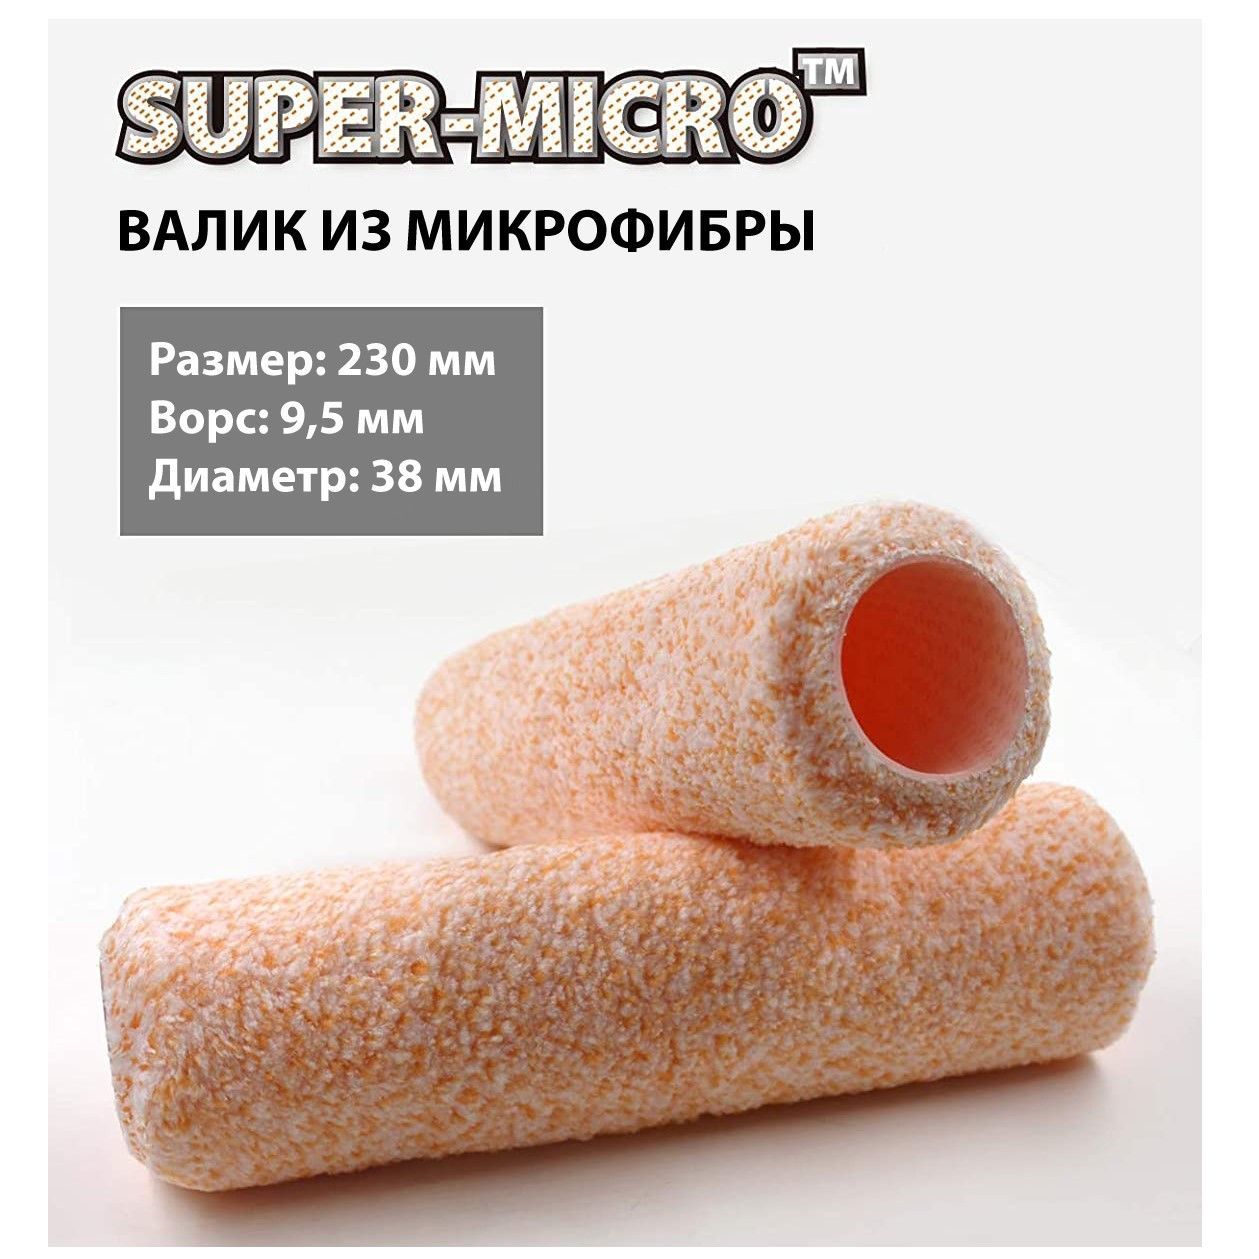 Сменный ролик Rollingdog SUPER-MICRO 230мм, ворс 9,5мм, для каркаса 38мм, микрофибра